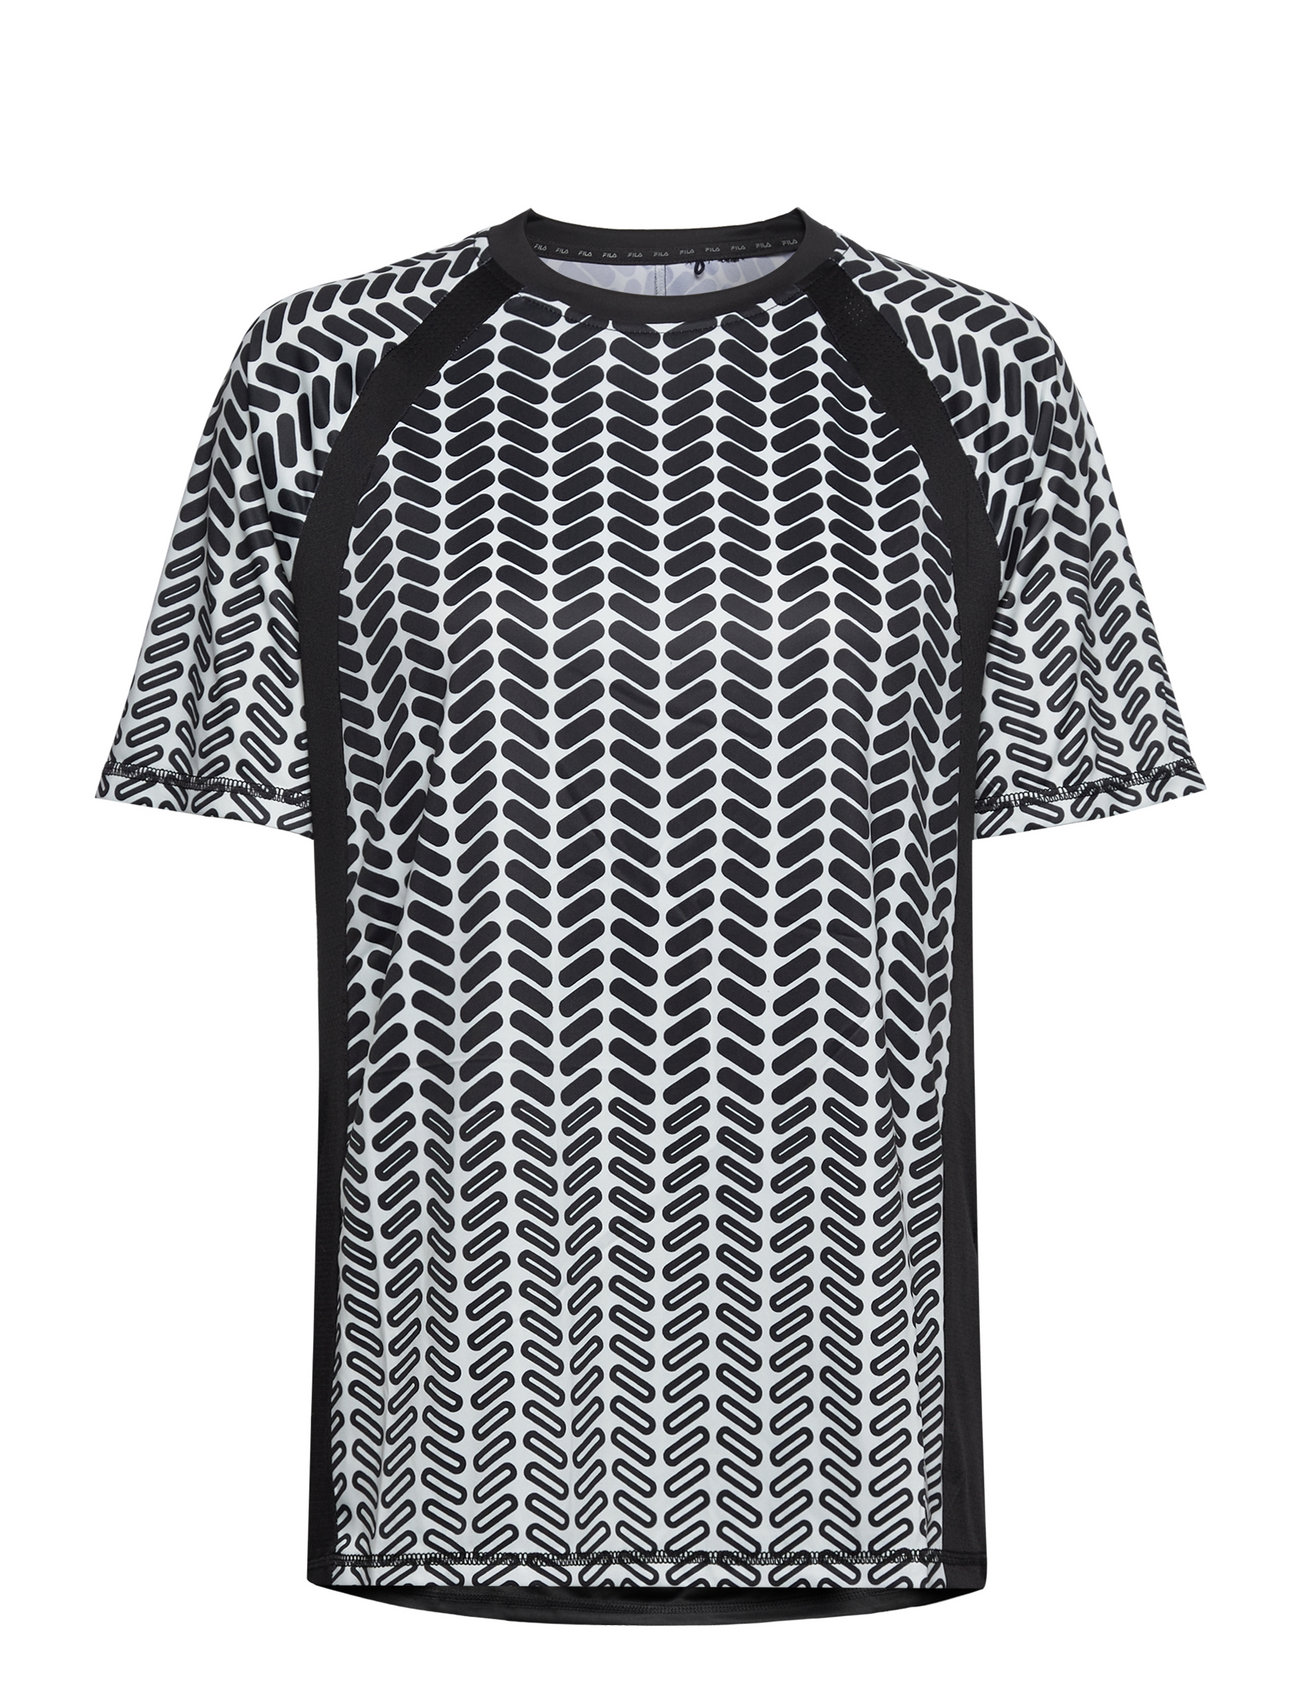 Radville Raglan Tee Tops T-shirts & Tops Short-sleeved Multi/patterned FILA